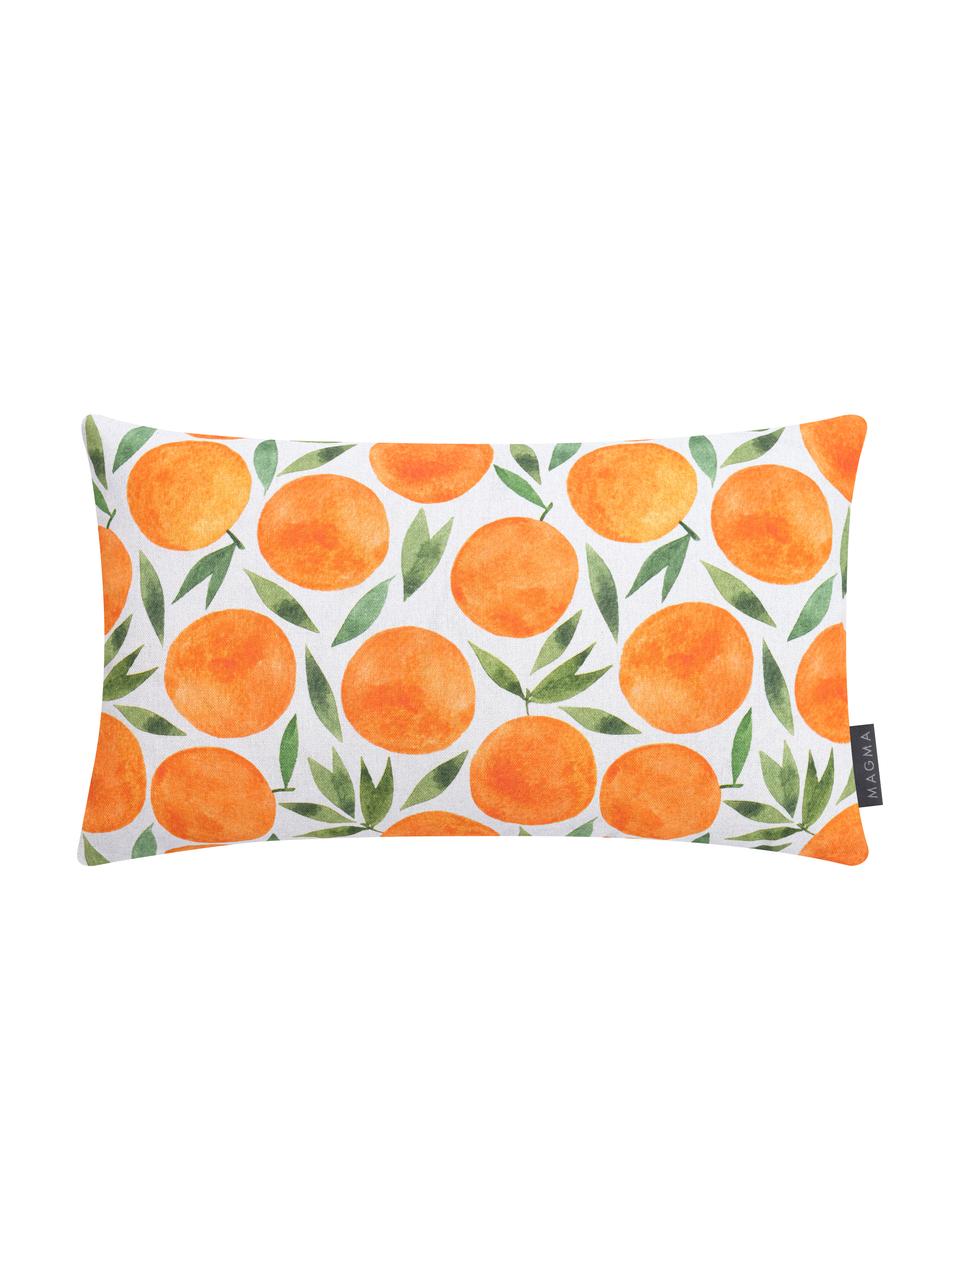 Kussenhoes oranje met zomers motief, Weeftechniek: half panama, Oranje, wit, groen, 30 x 50 cm